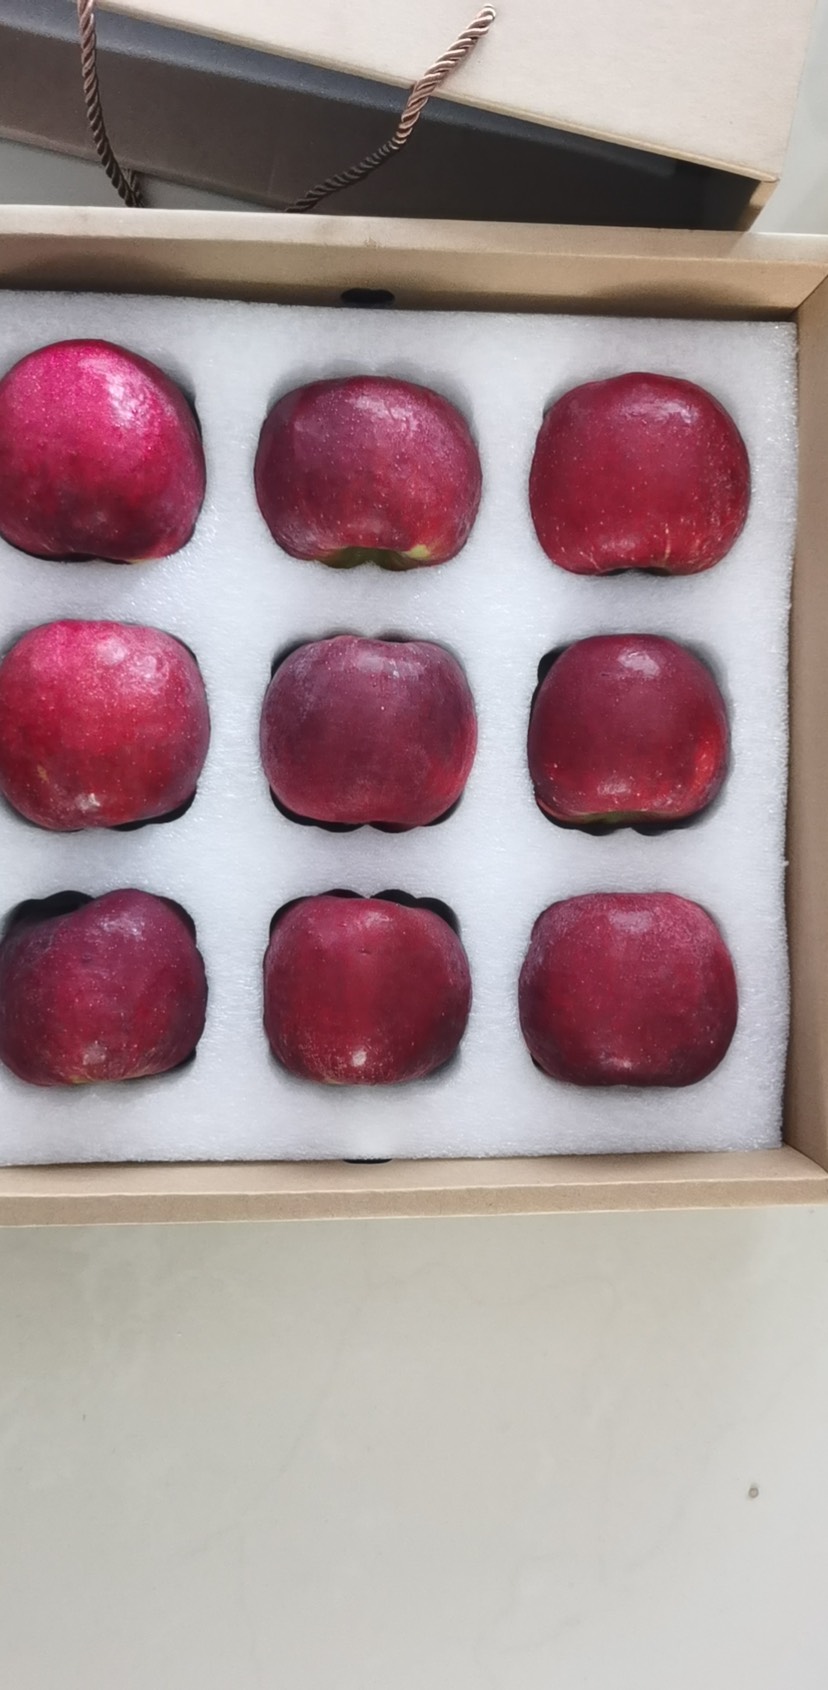 石林彝族自治县 云南石林高原新鲜华硕苹果长在石头上的苹果当季包邮5斤装